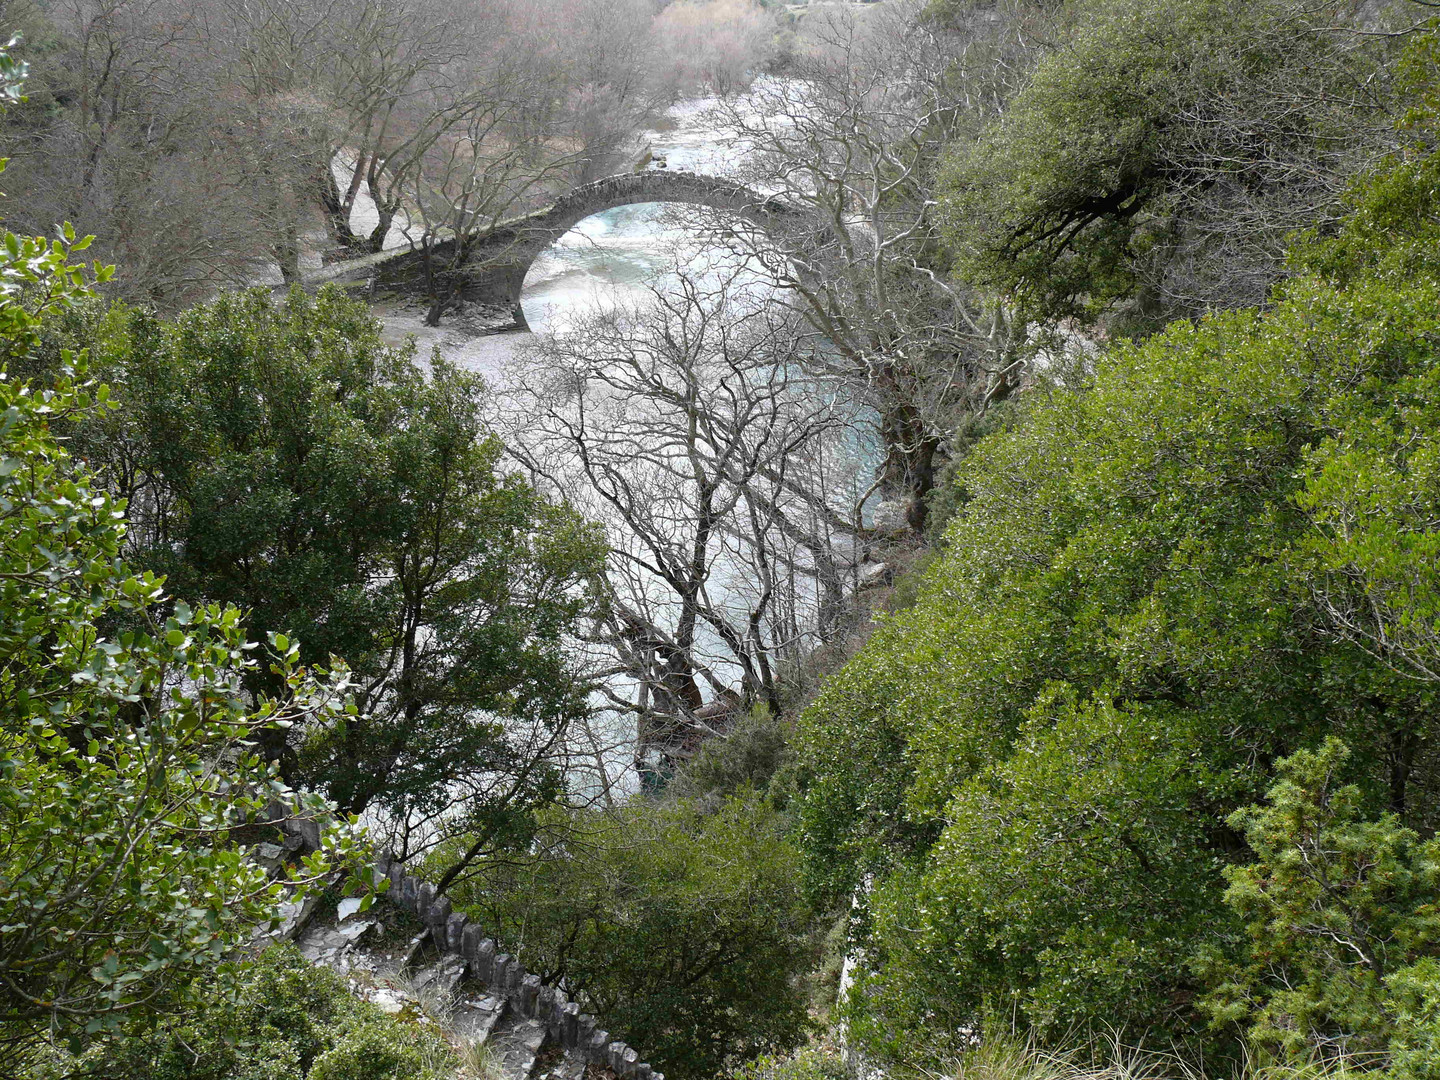 Viodomatis river